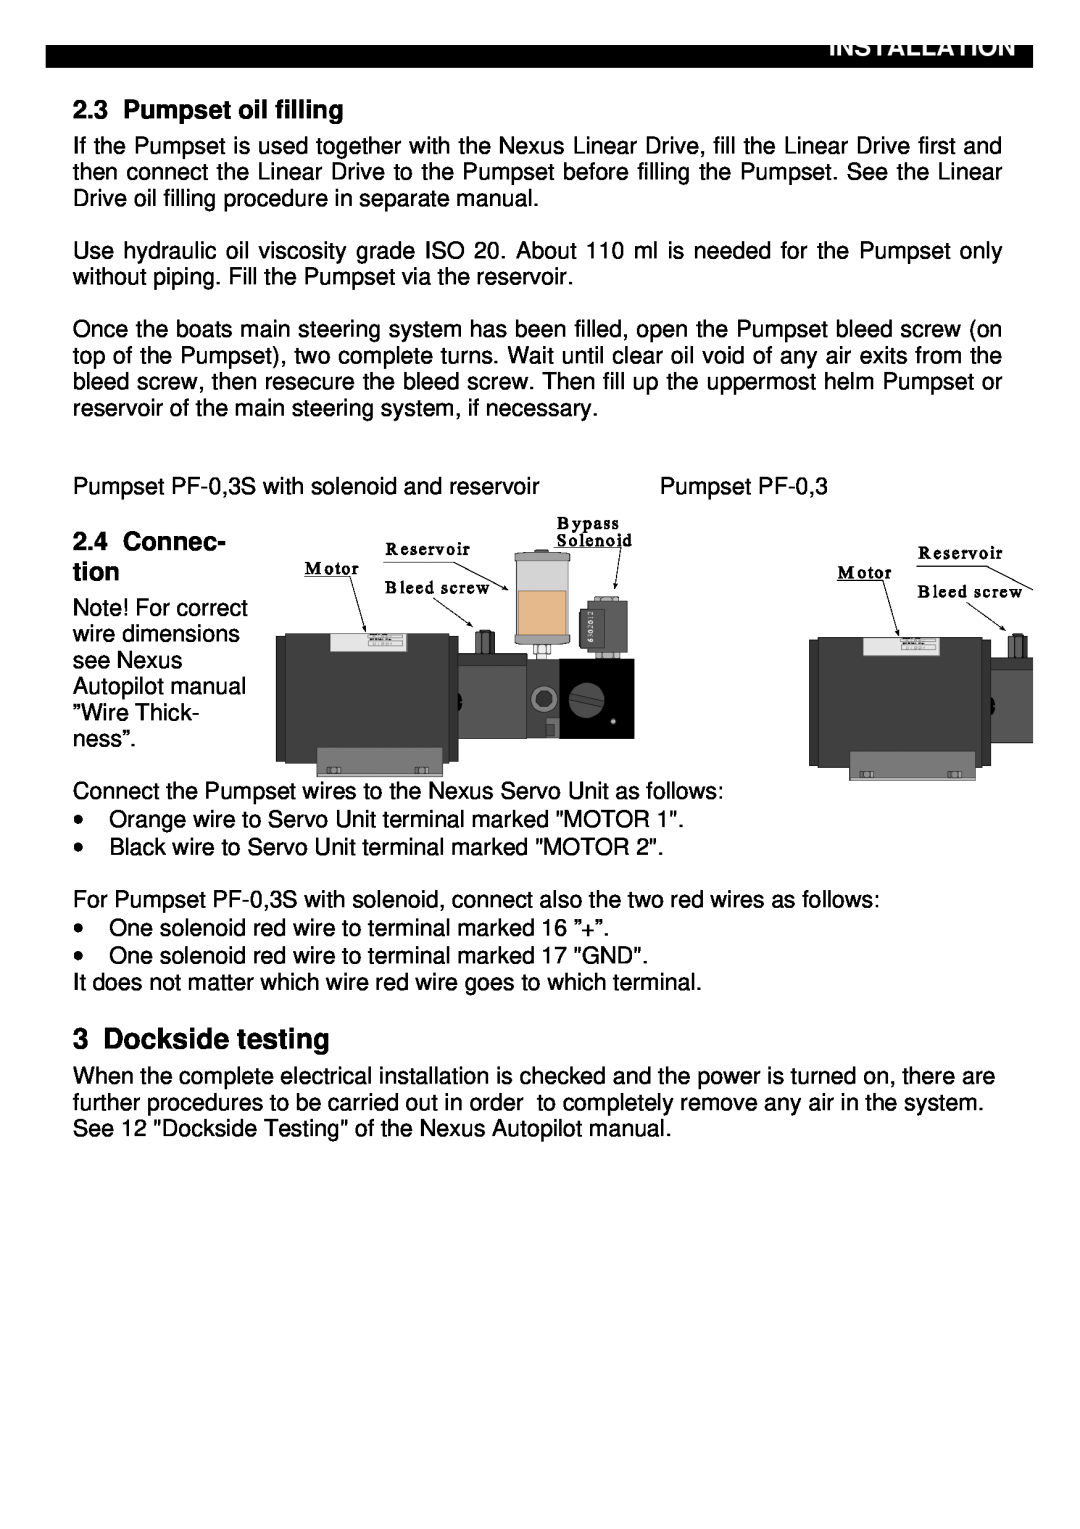 Nexus 21 3, S, PF-0 installation manual Dockside testing, Installation, Pumpset oil filling, Connec- tion 